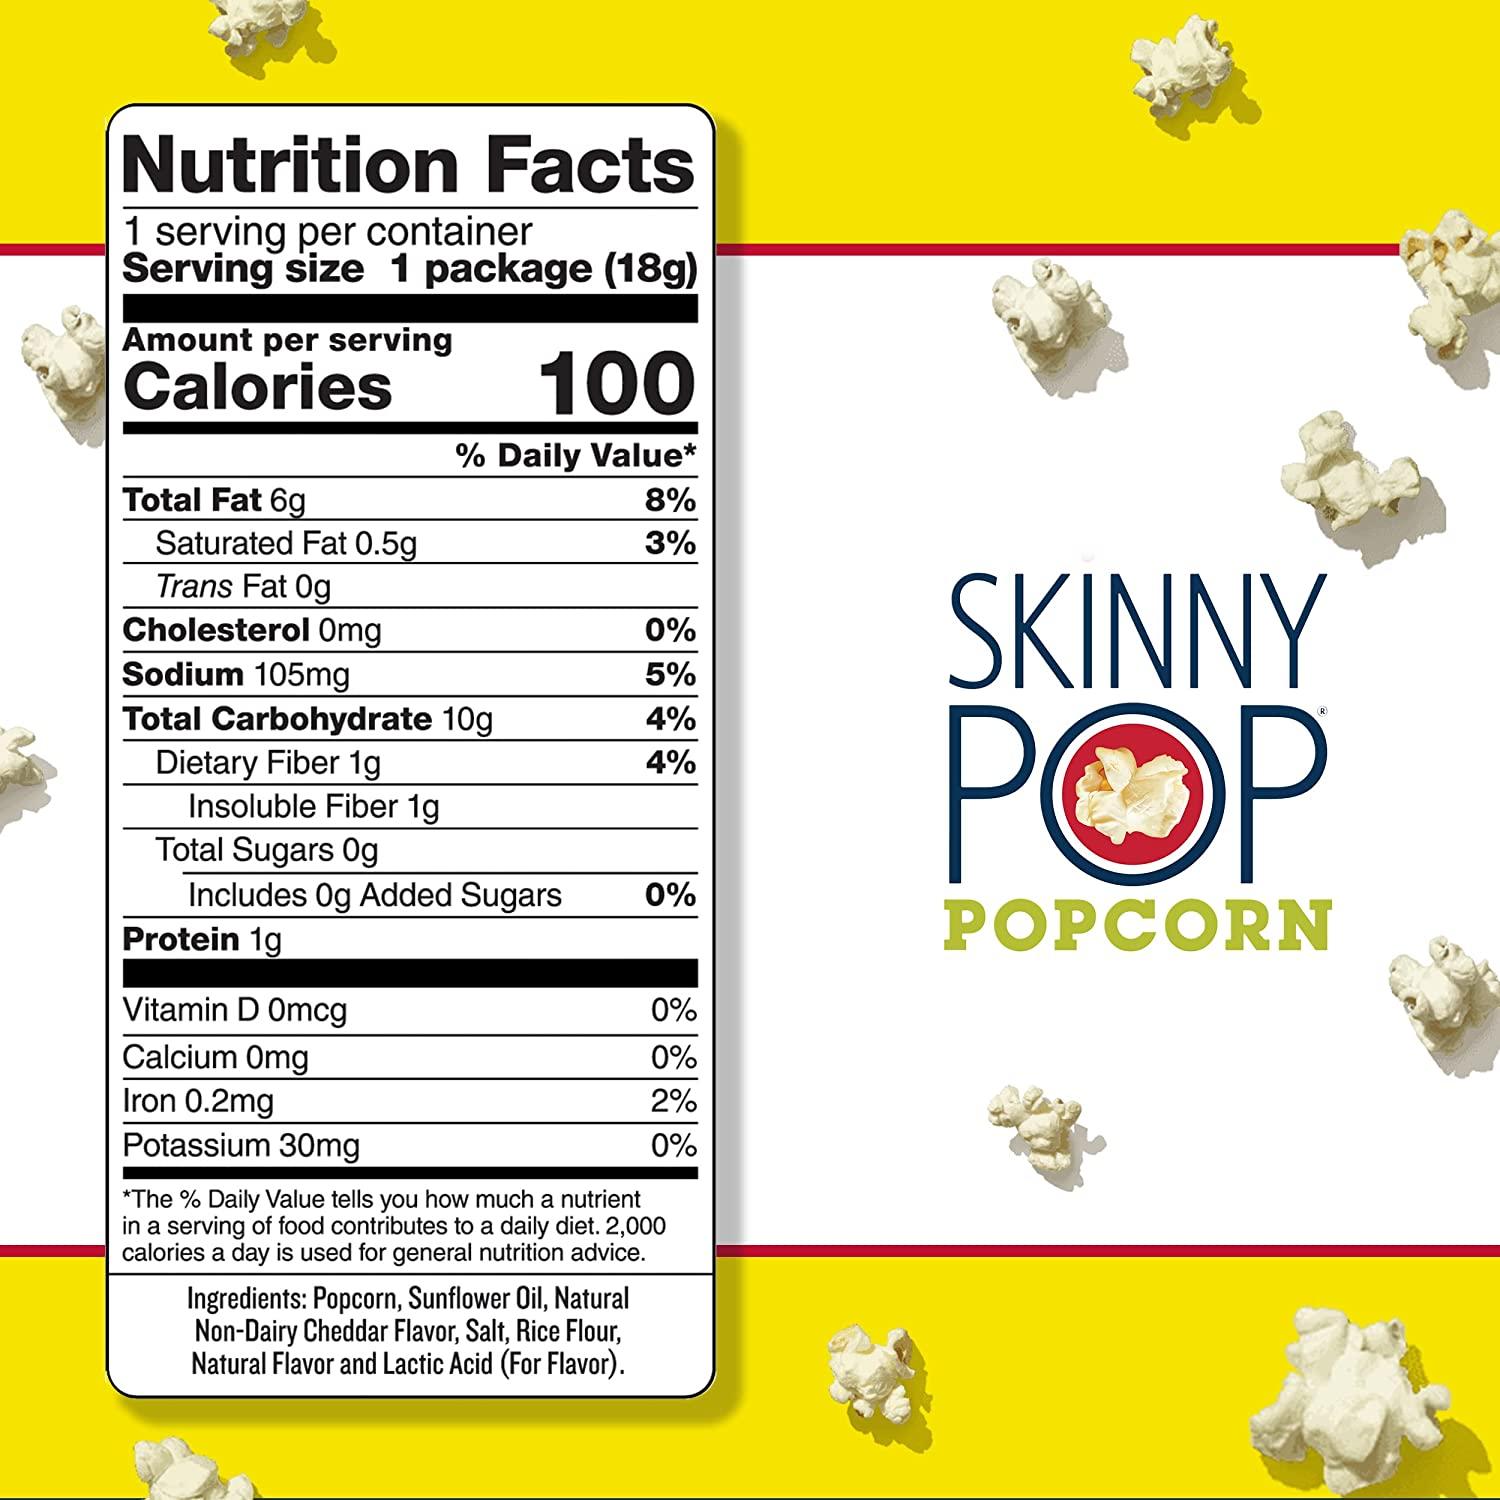 Skinny Pop Popcorn - 0.65 oz bag